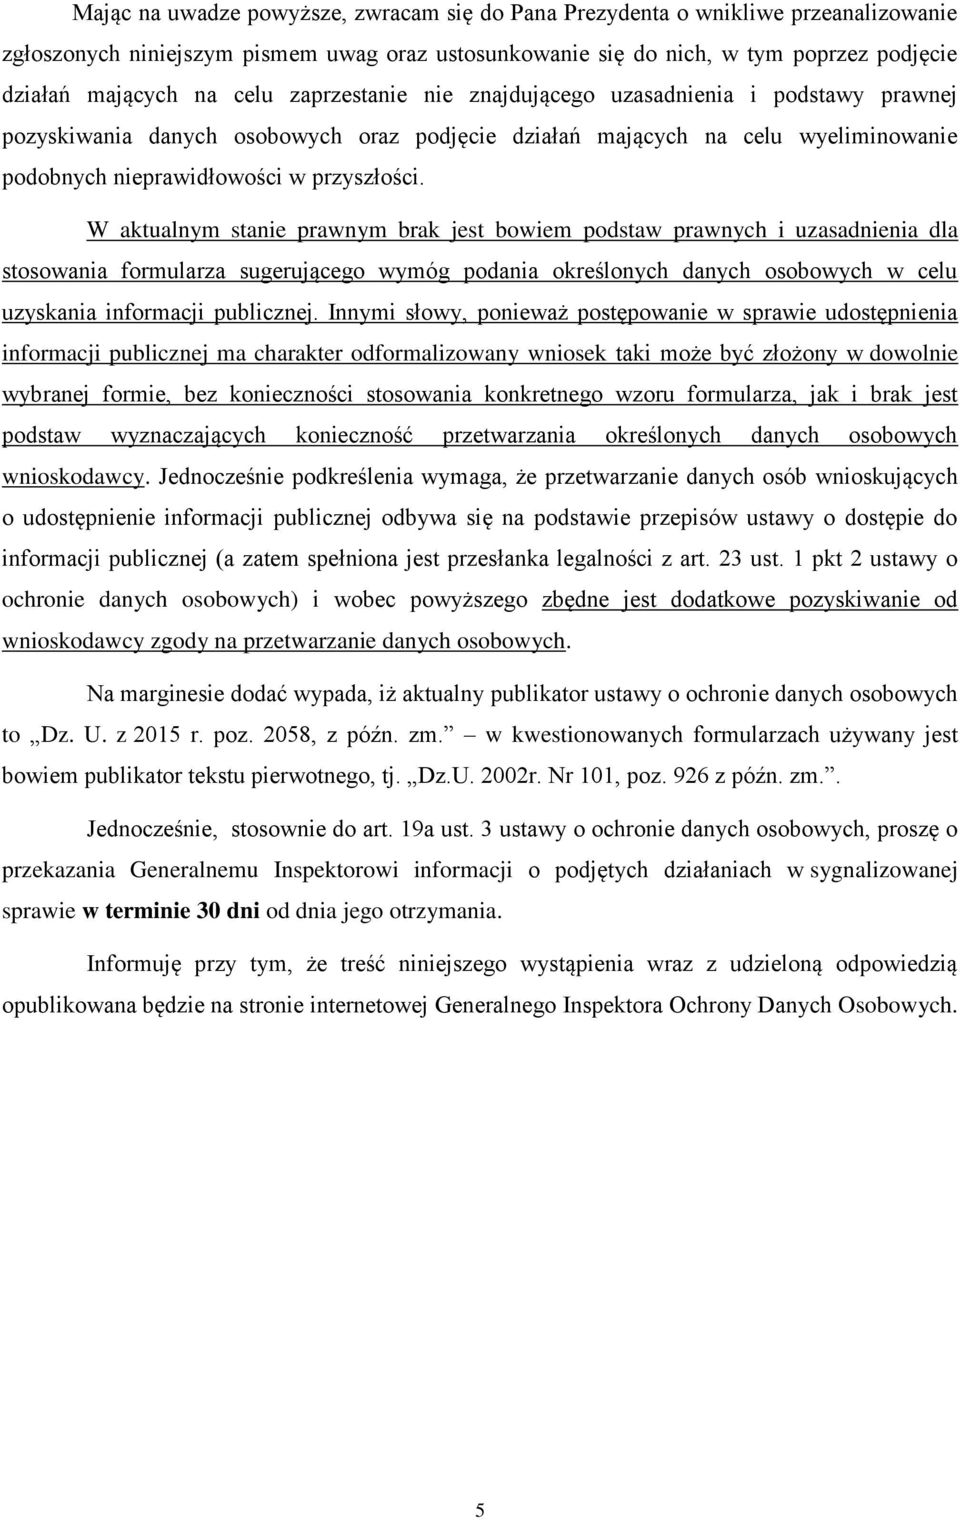 GENERALNY INSPEKTOR OCHRONY DANYCH OSOBOWYCH - PDF Darmowe pobieranie